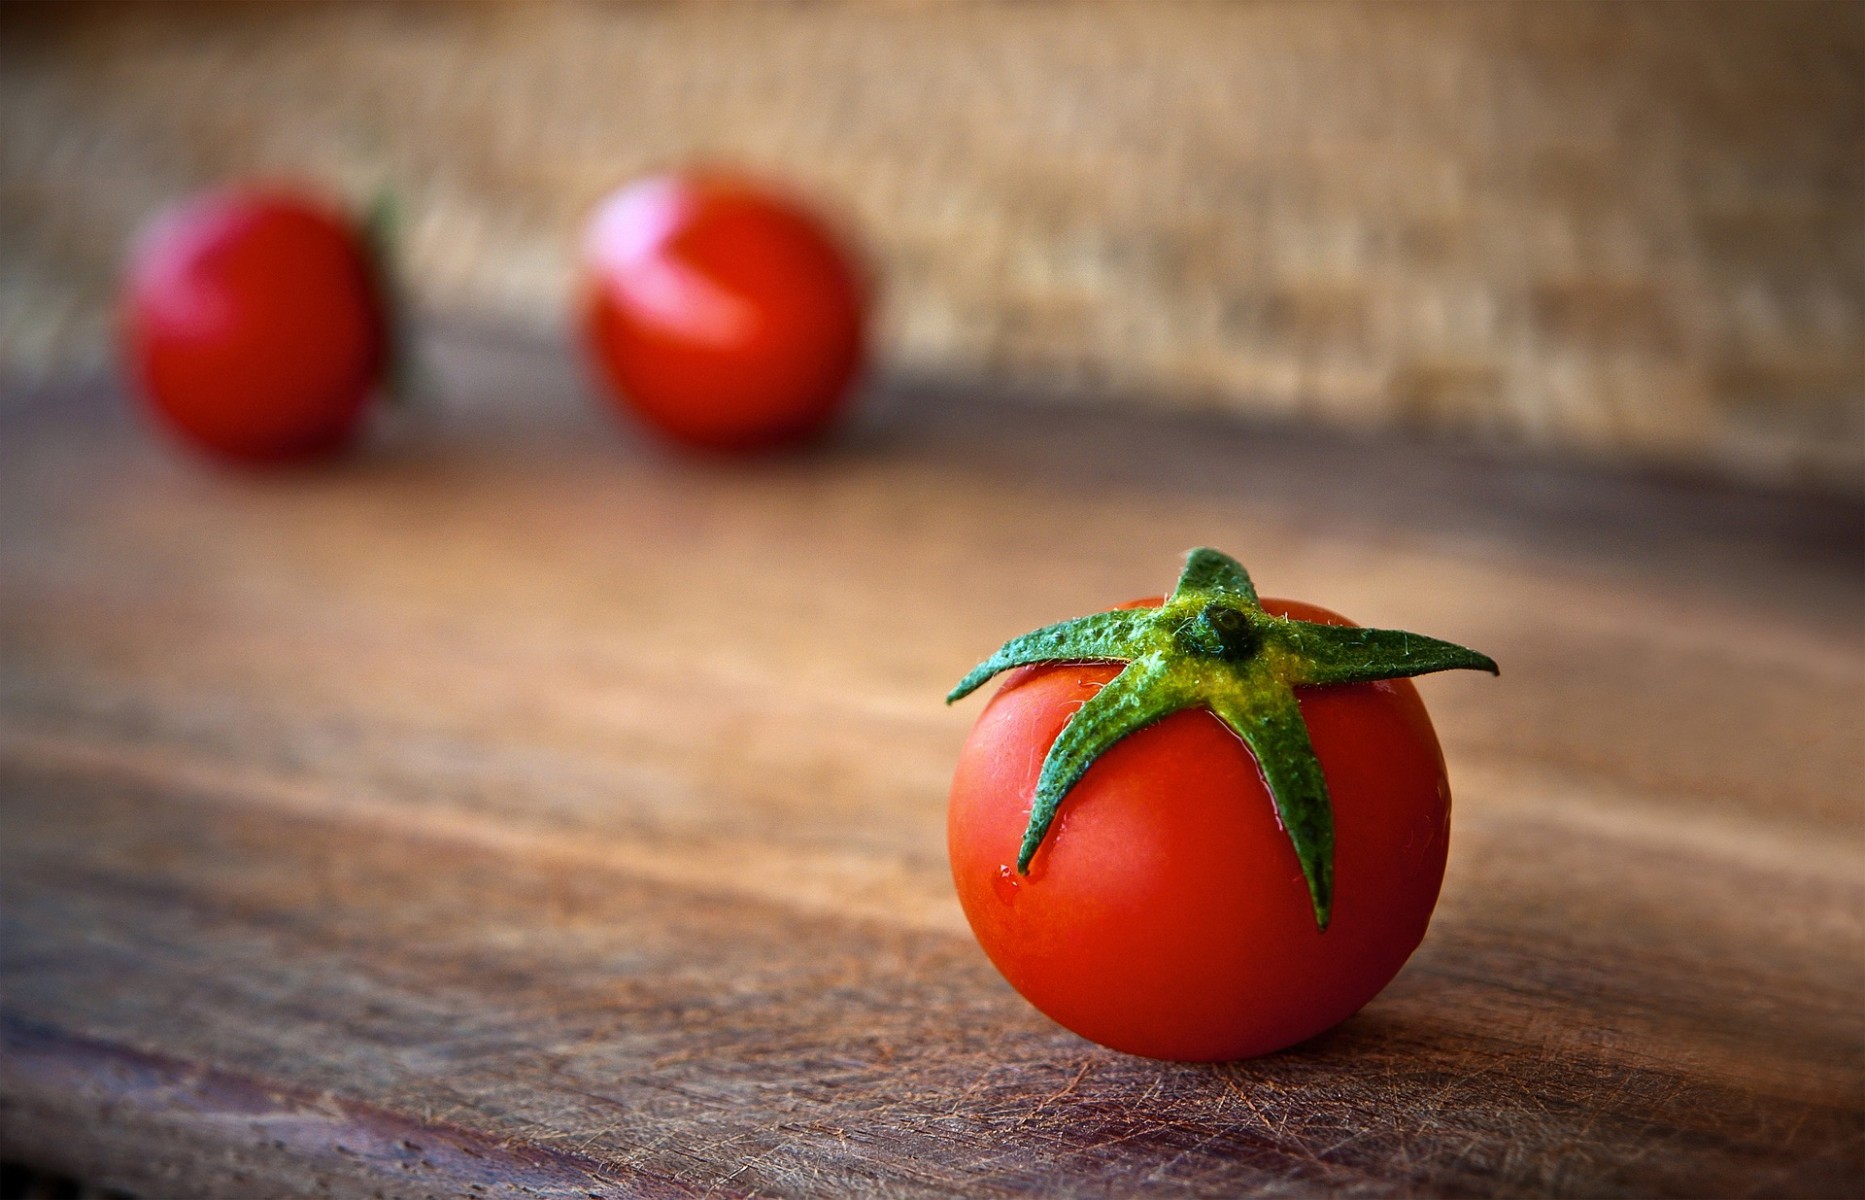 Makanan Kaya Zat Besi dapat Membatalkan Manfaat Antikanker Tomat